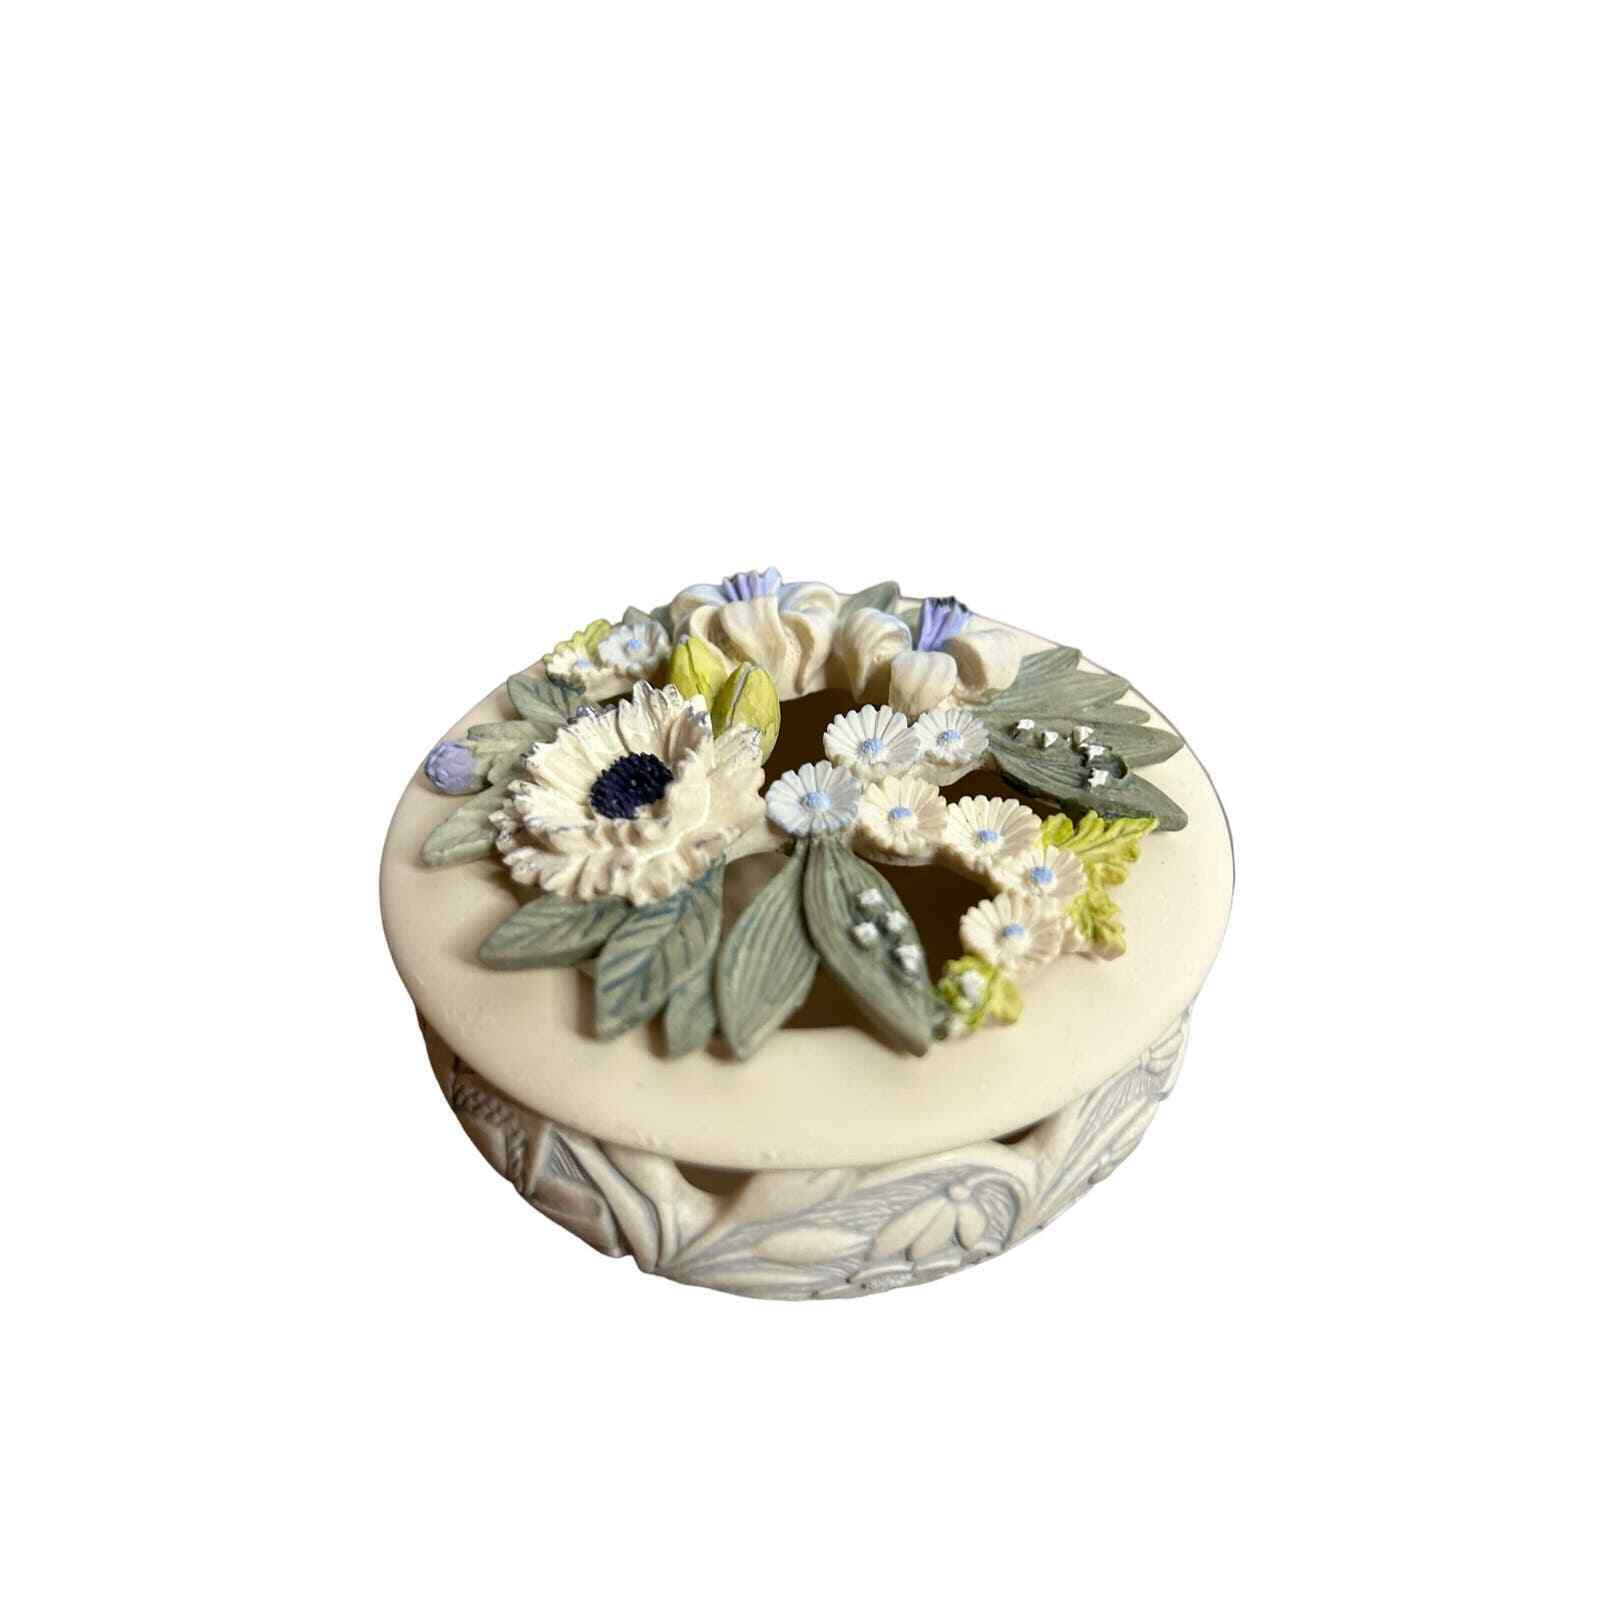 Vintage Trinket Jewelery Box Handcast Design Limited Floral Design UK